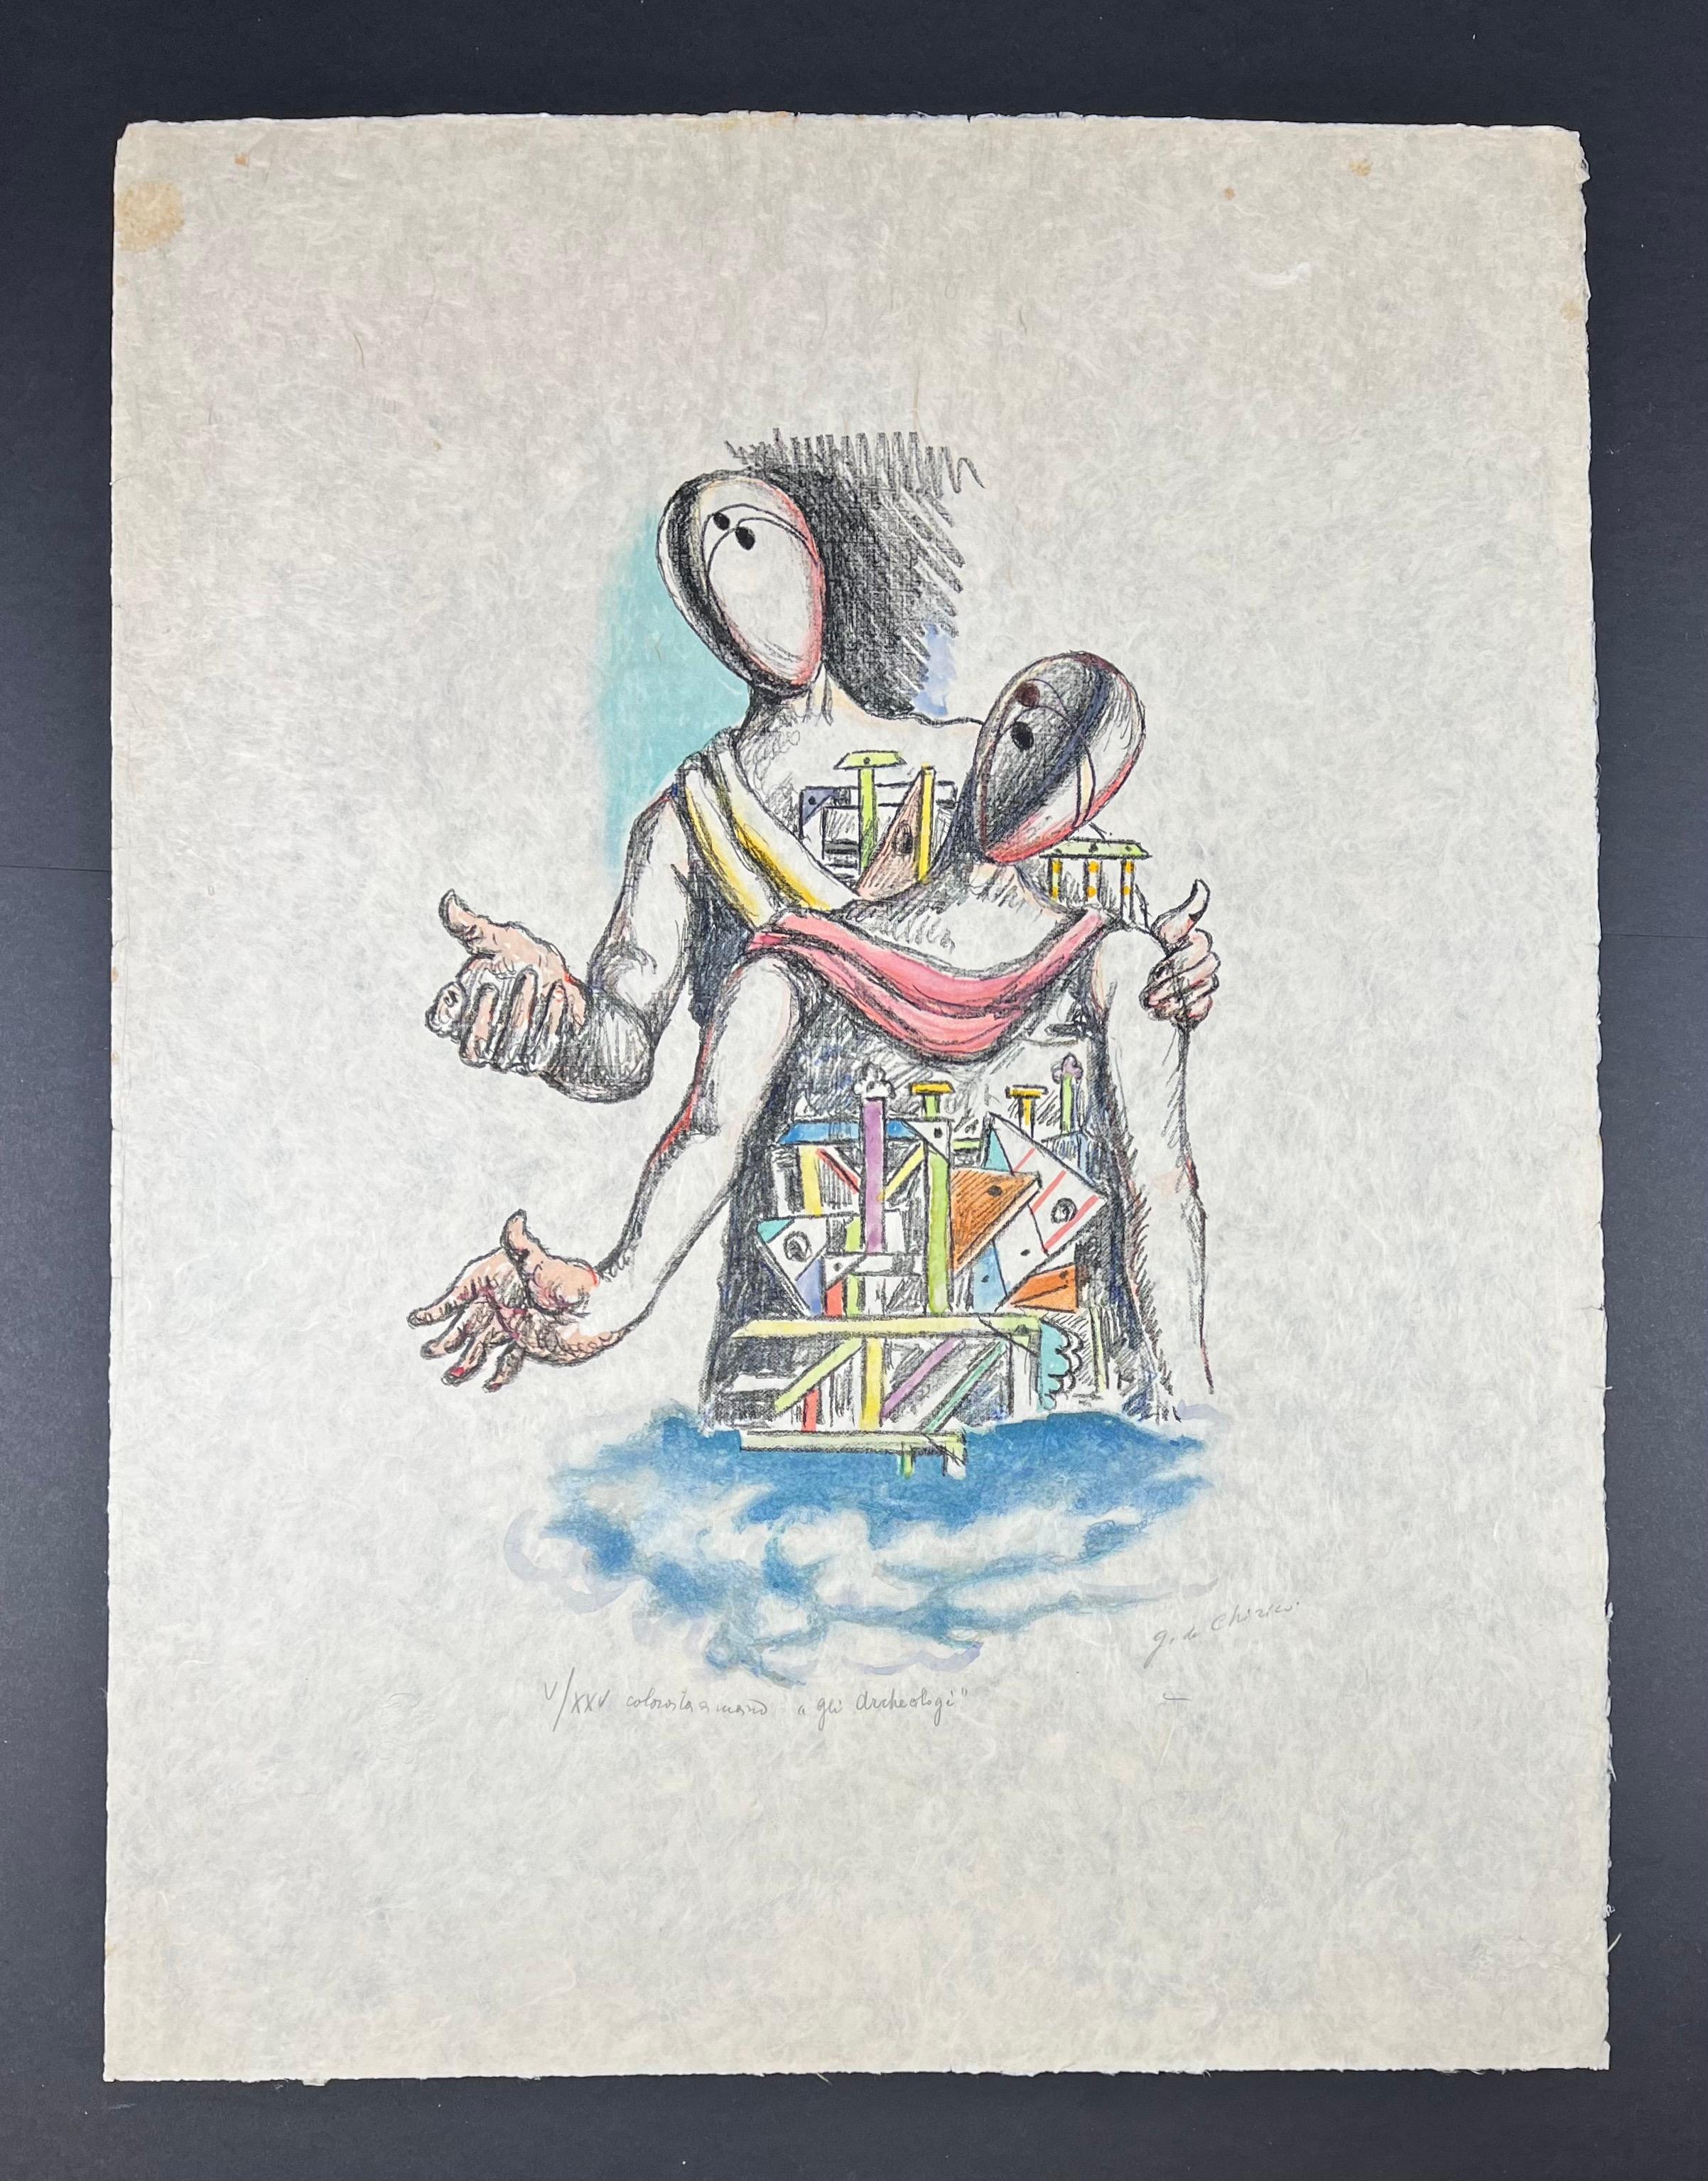  Giorgio De Chirico - Gli Archeologi -Lithograph hand-watercolored by the artist 8